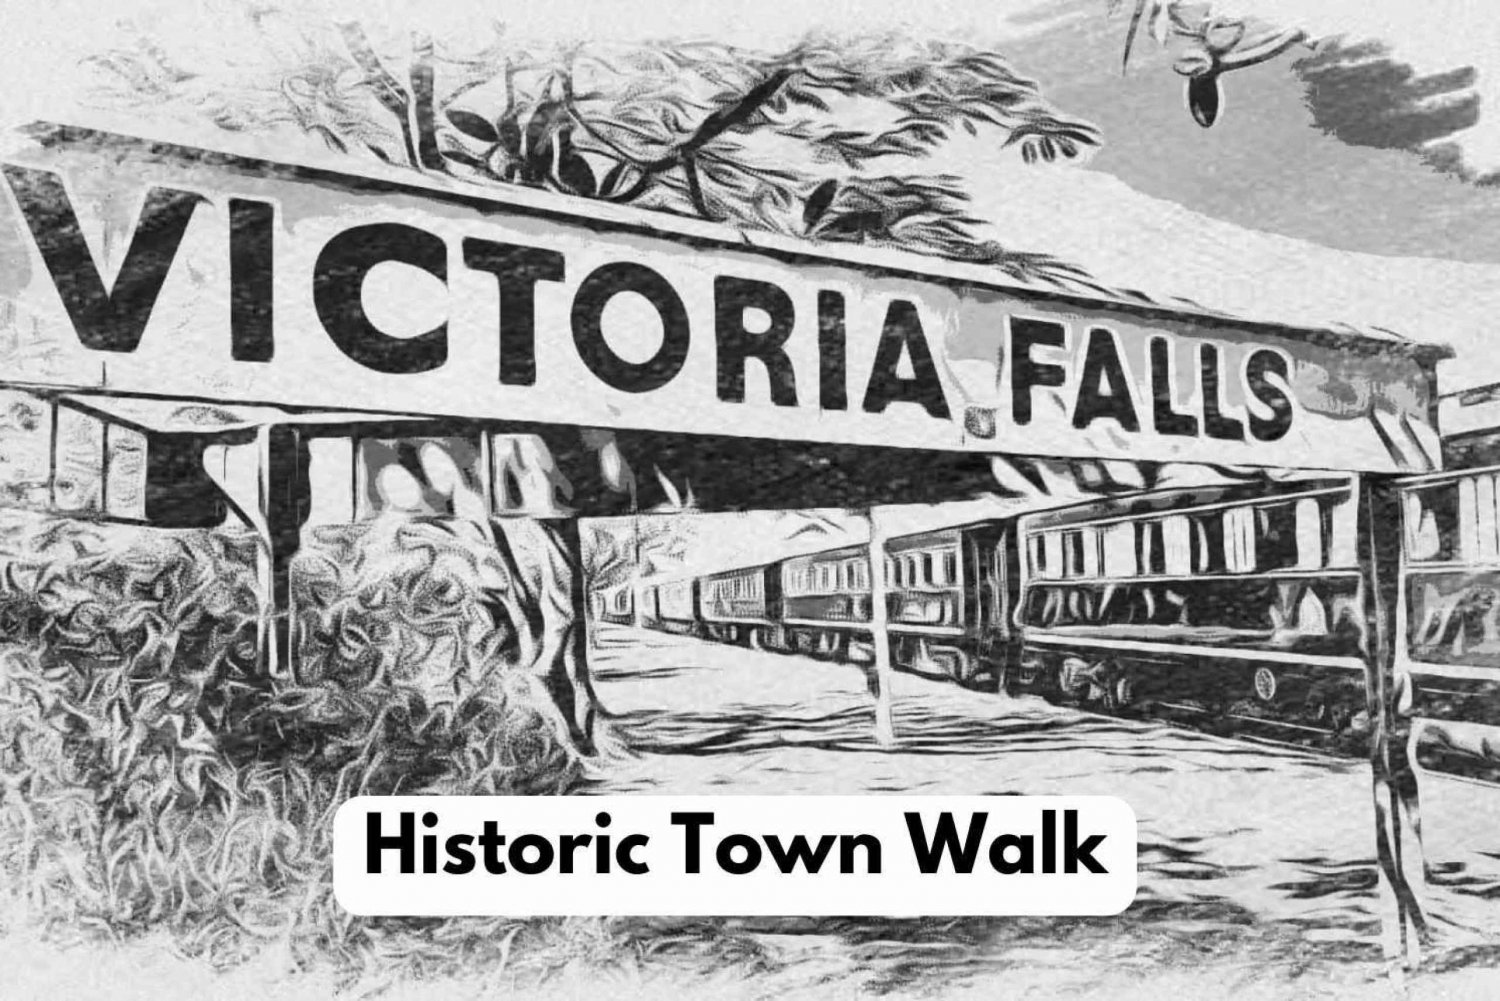 Victoria Watervallen: Historische stadstour + boswandeling